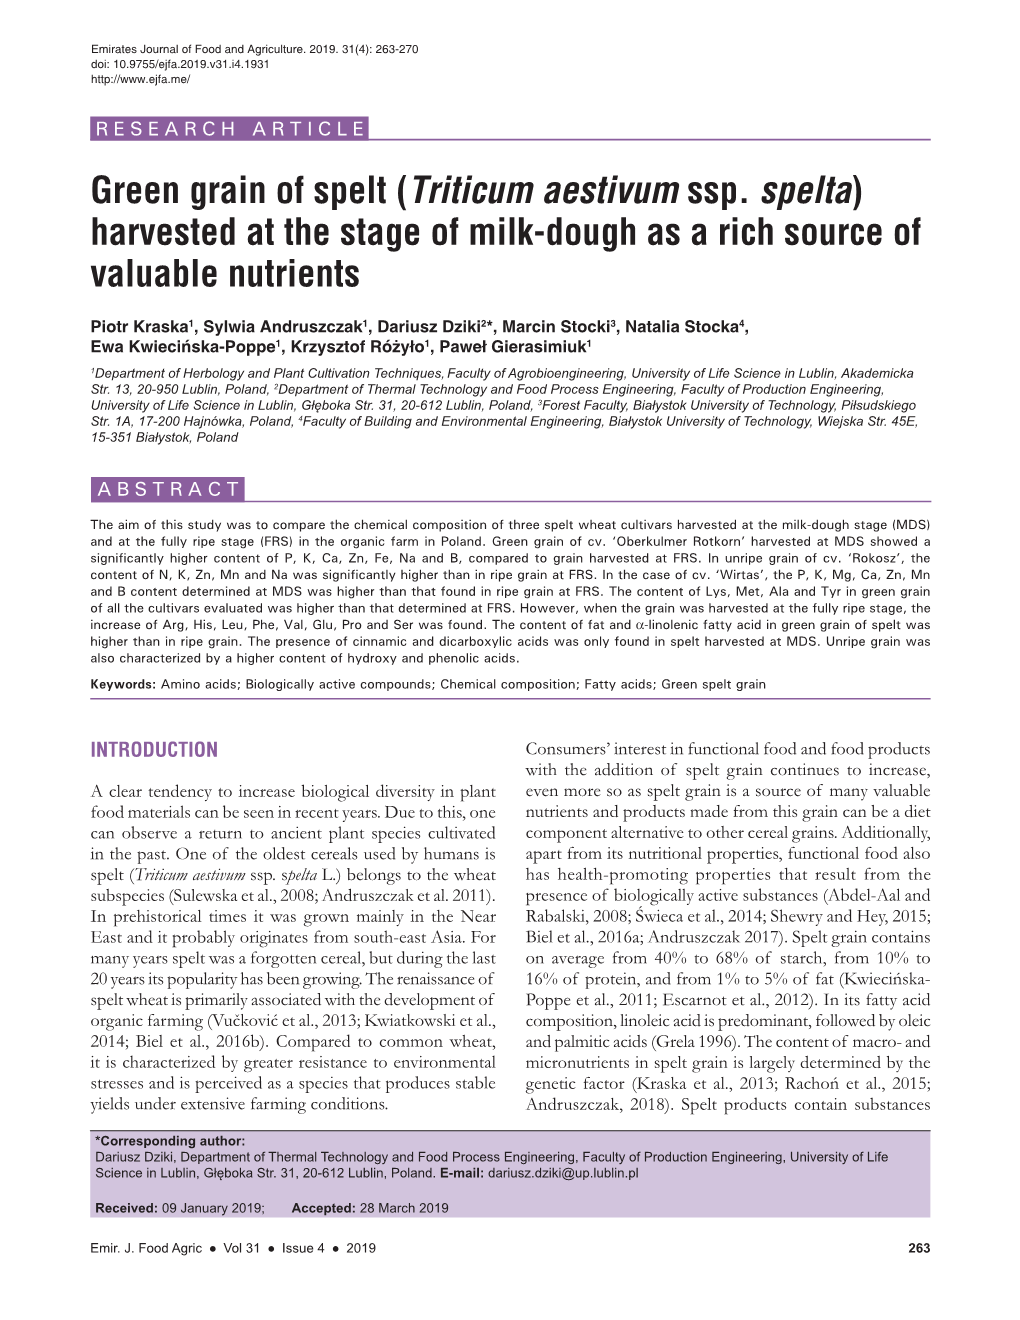 Green Grain of Spelt (Triticum Aestivum Ssp